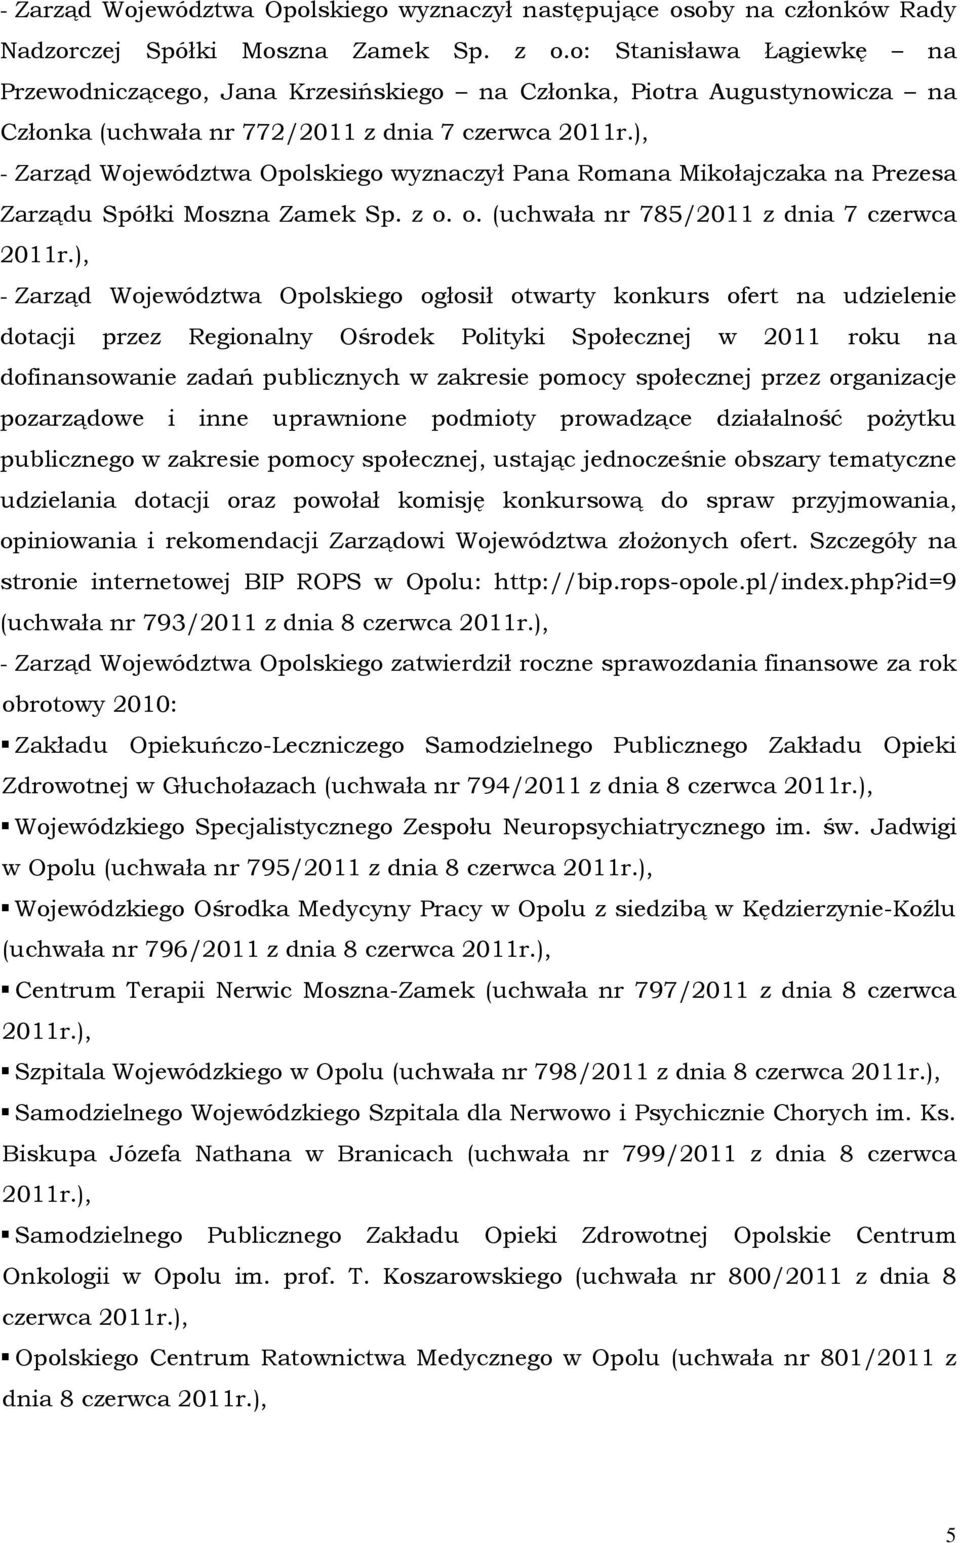 ), - Zarząd Województwa Opolskiego wyznaczył Pana Romana Mikołajczaka na Prezesa Zarządu Spółki Moszna Zamek Sp. z o. o. (uchwała nr 785/2011 z dnia 7 czerwca 2011r.